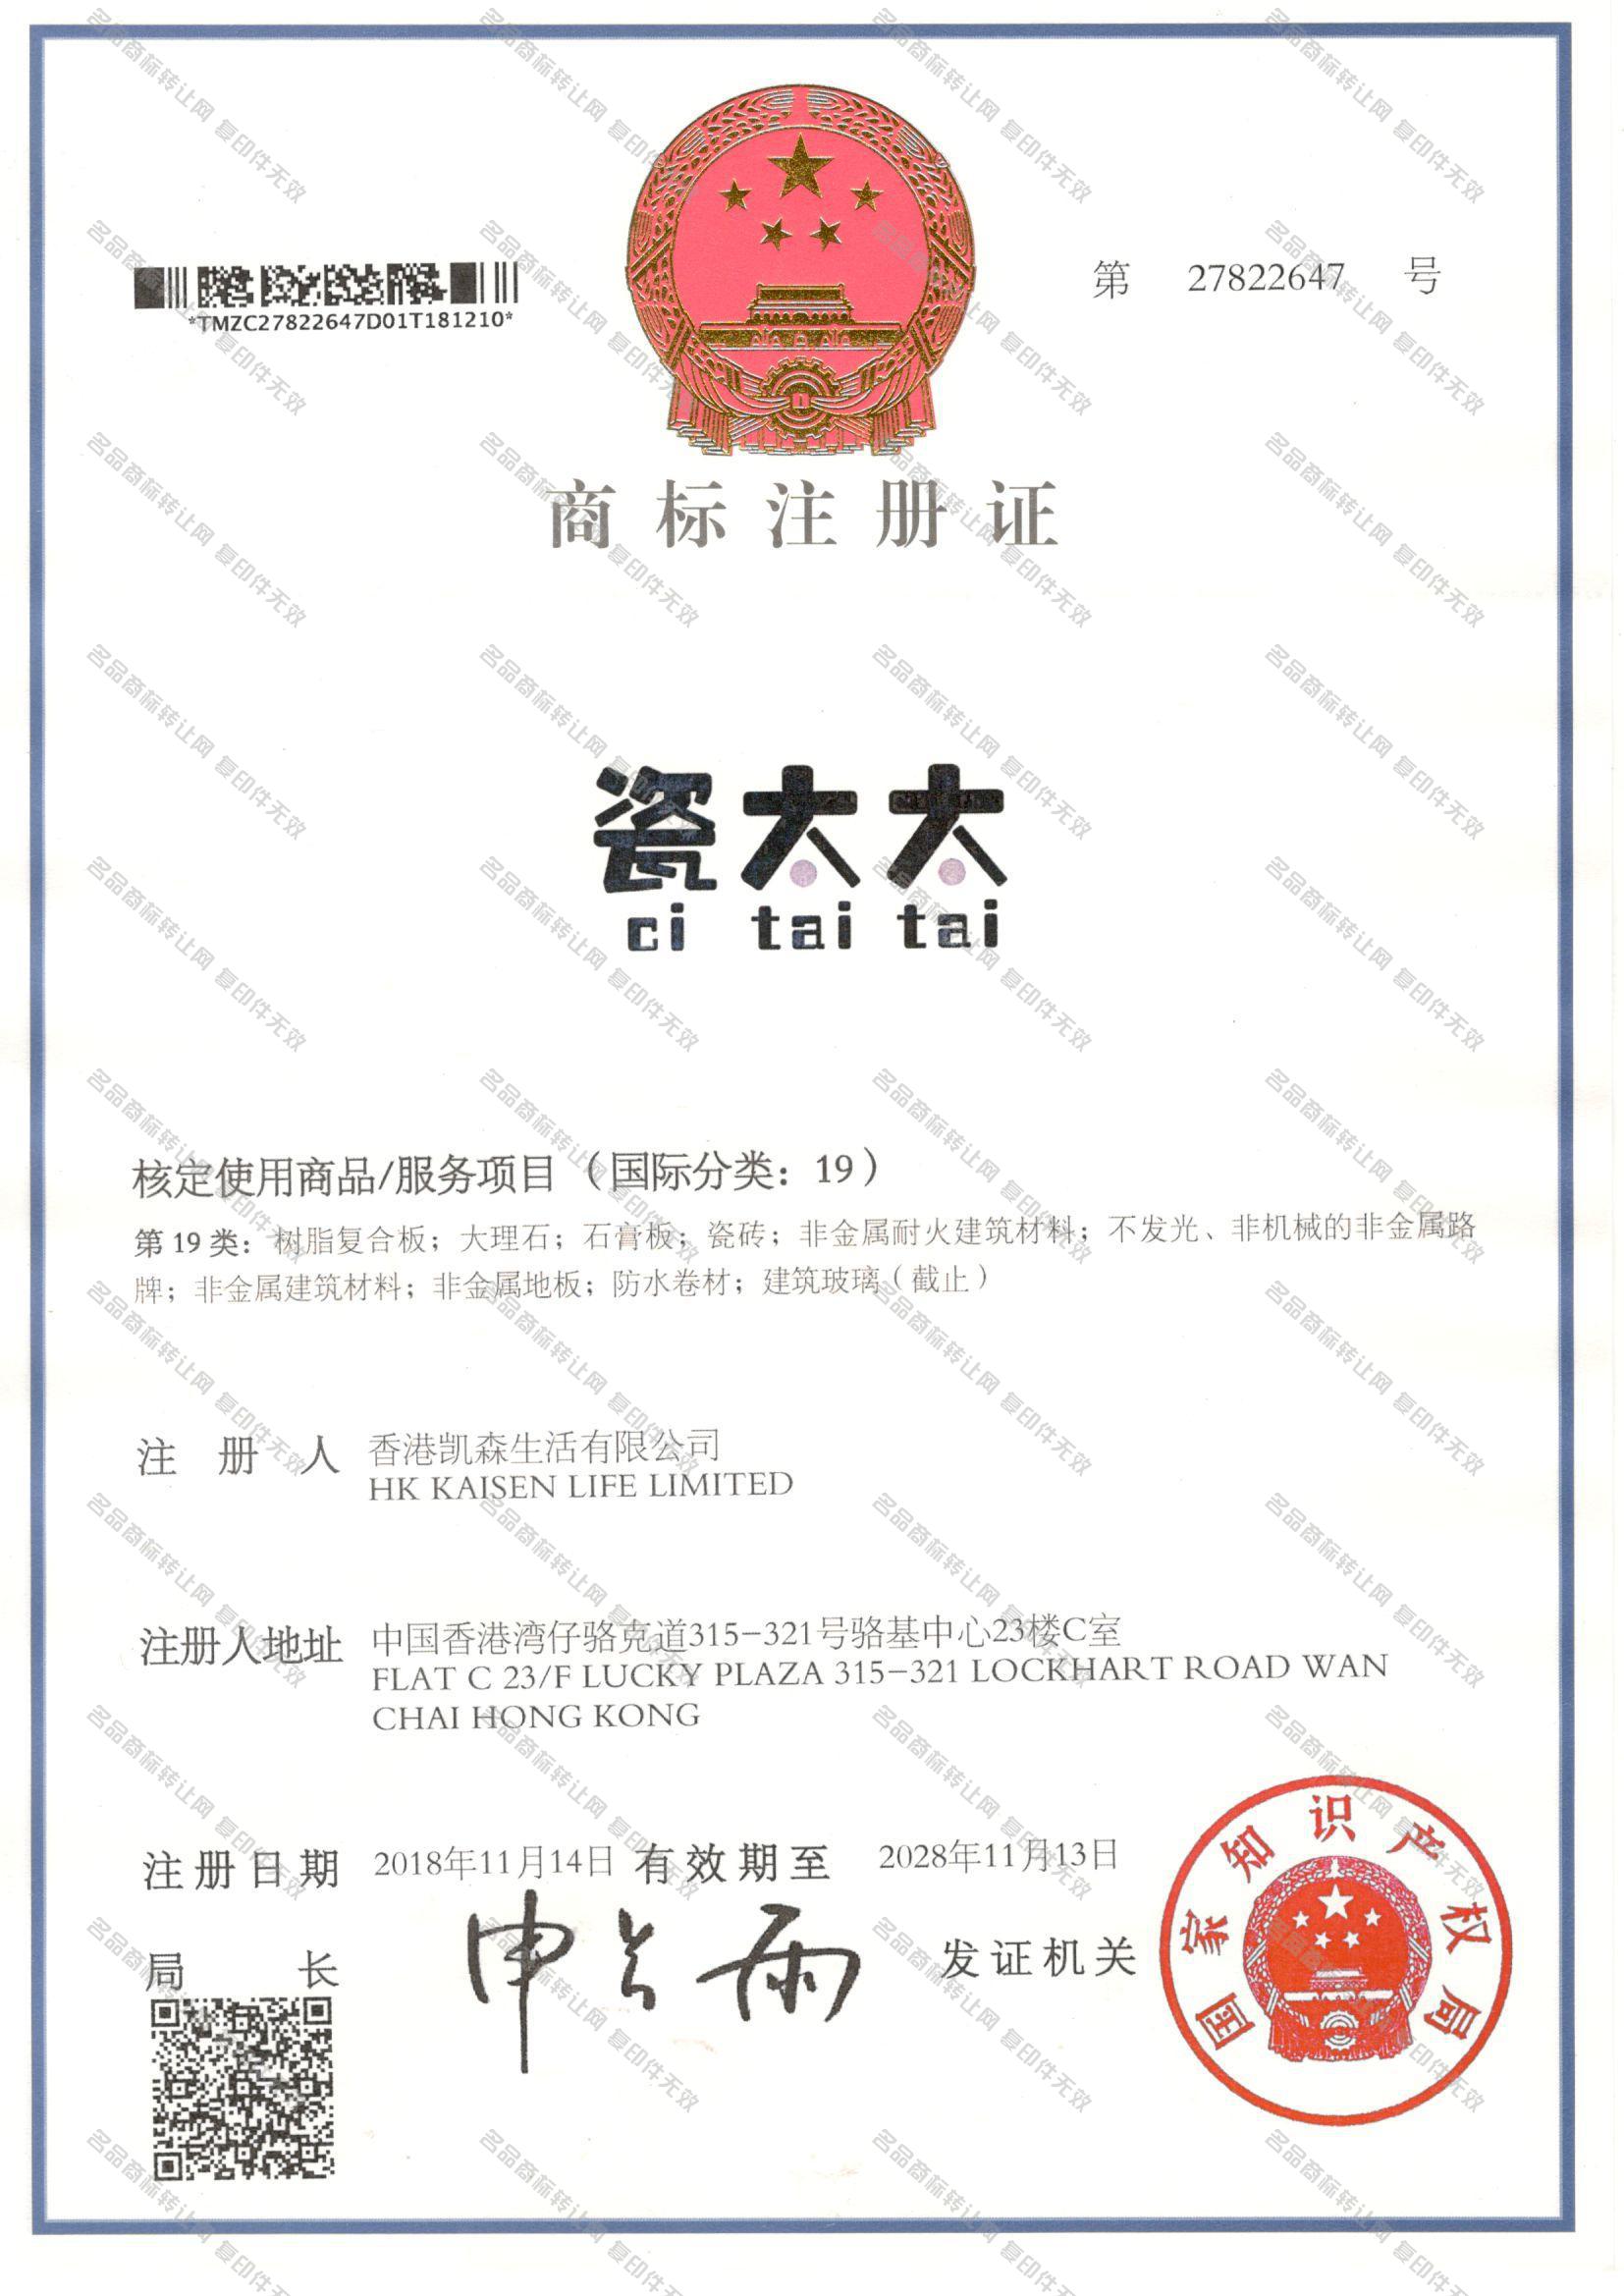 瓷太太 CITAITAI注册证